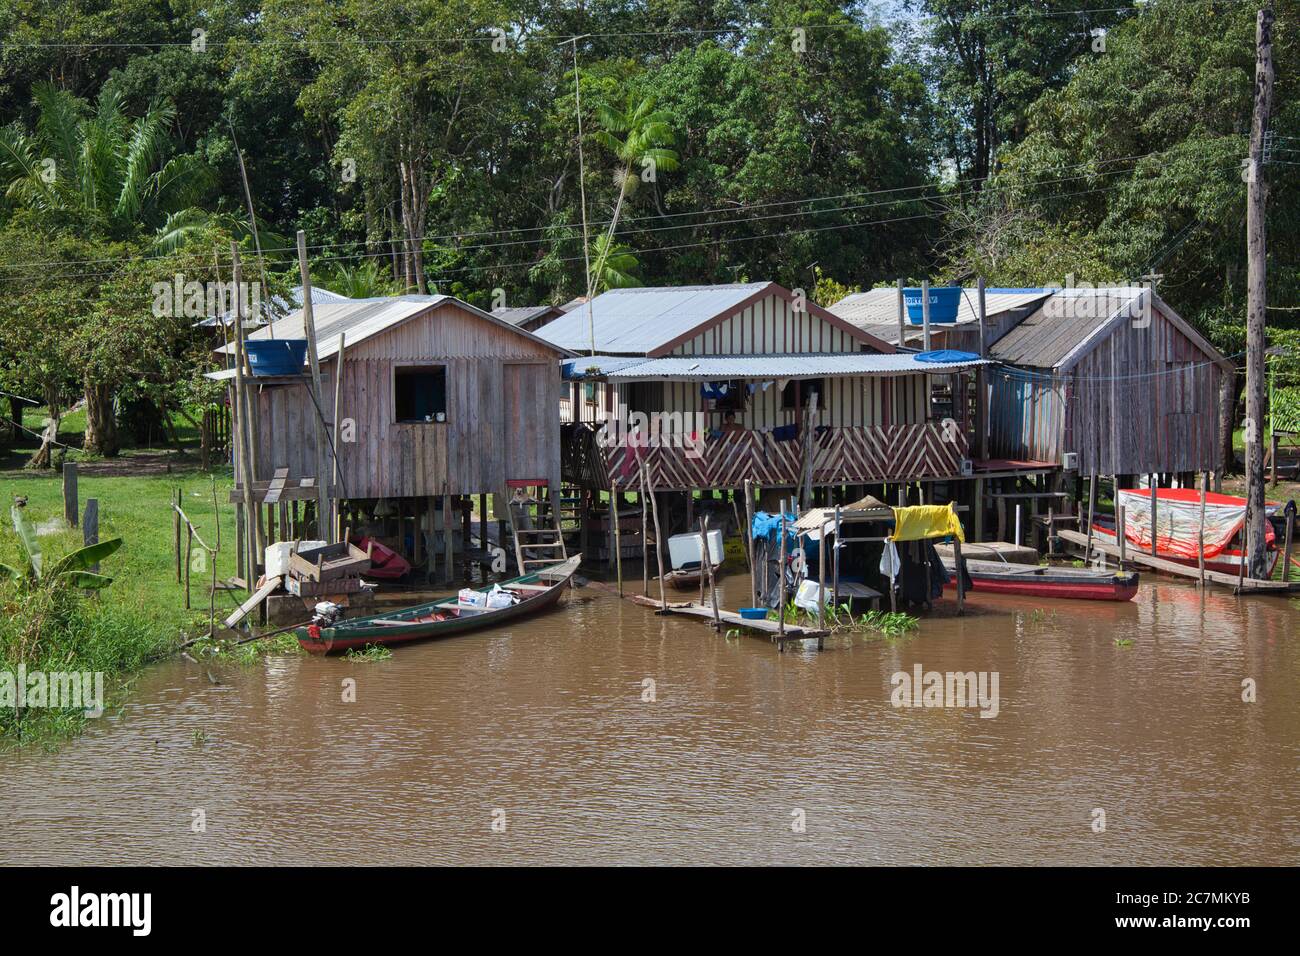 Drei einfache Häuser auf Stelzen mit Stegen für Boote, am Ufer des Amazonas bei Manaus, Amazonas Staat, Brasilien Stockfoto